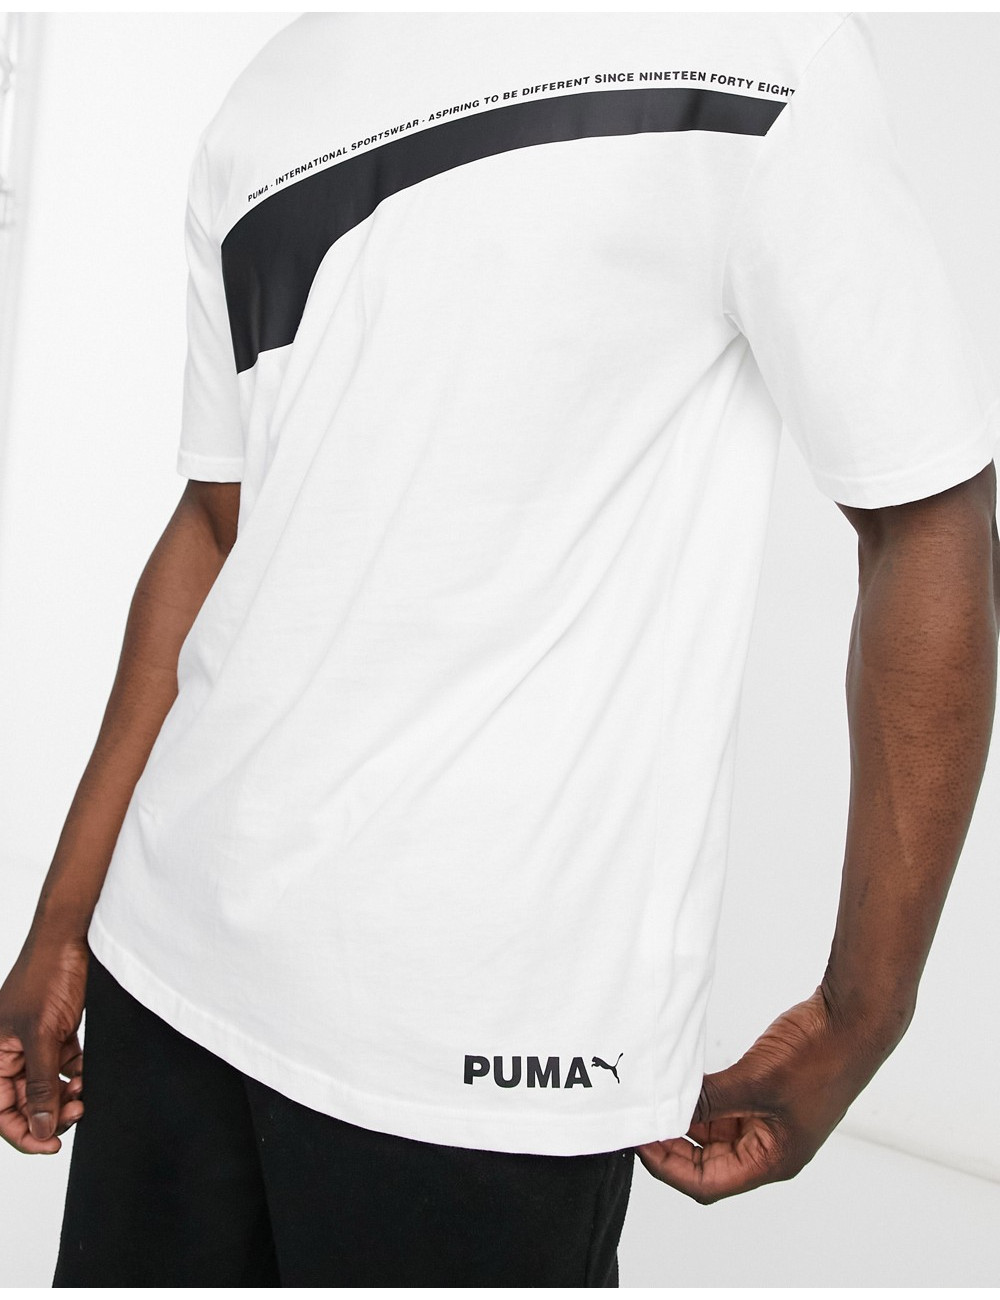 Puma avenir tshirt in white